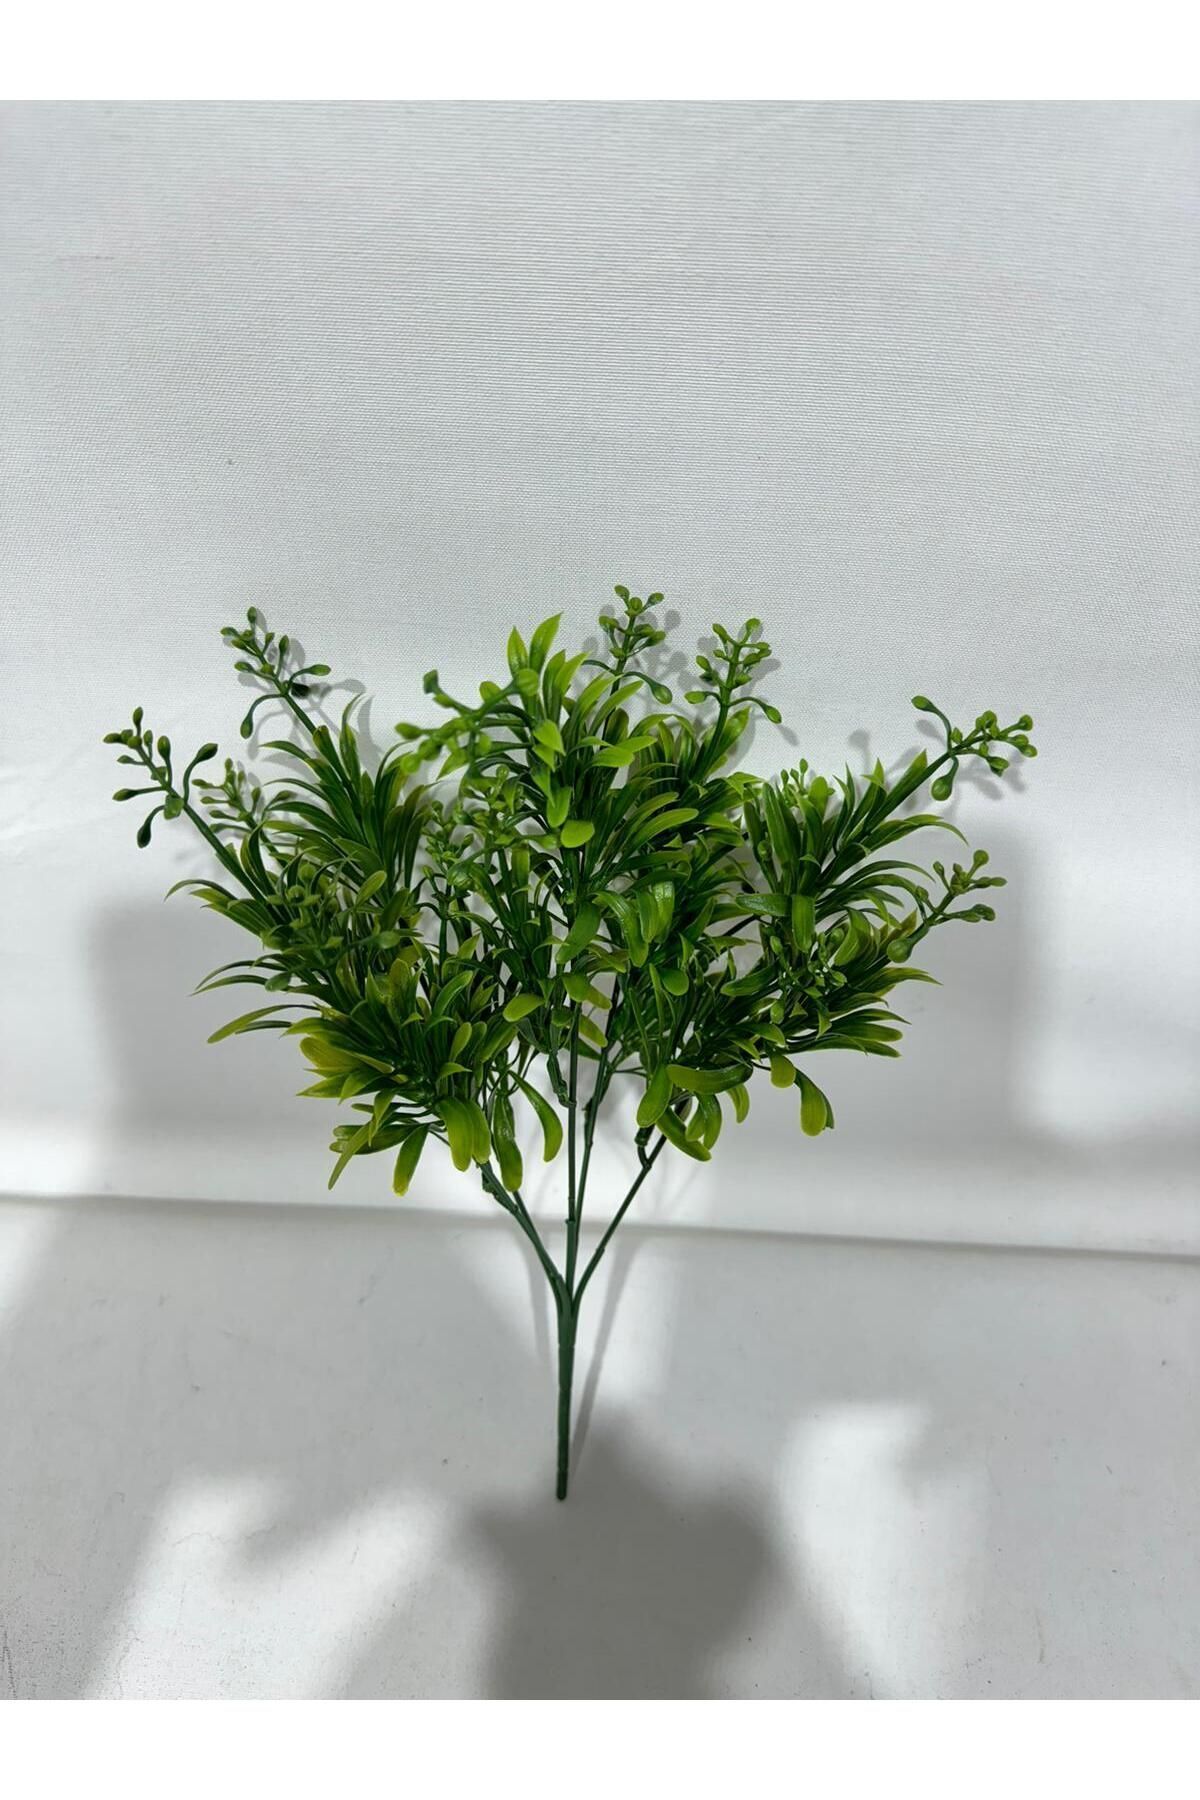 yapay çiçek dünyası Yapay Çiçek Küçük Yapraklı Yeşil Demeti 5dal Dekoratif Yapay Bitki